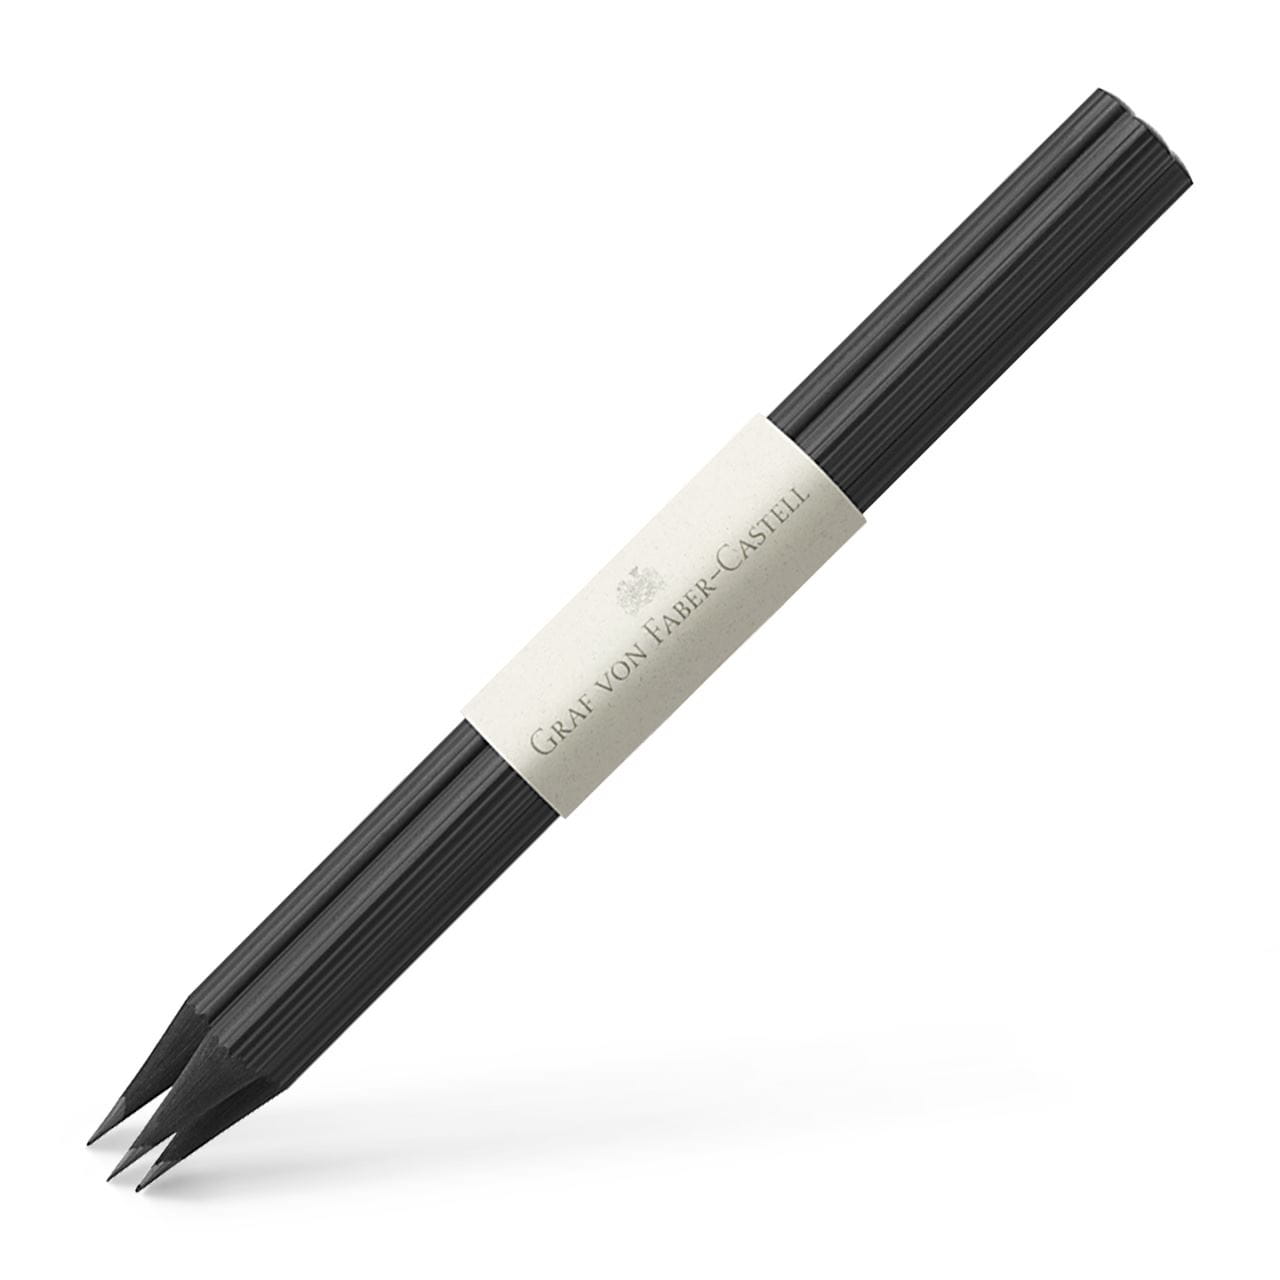 Graf-von-Faber-Castell - 3 graphite pencils, Black